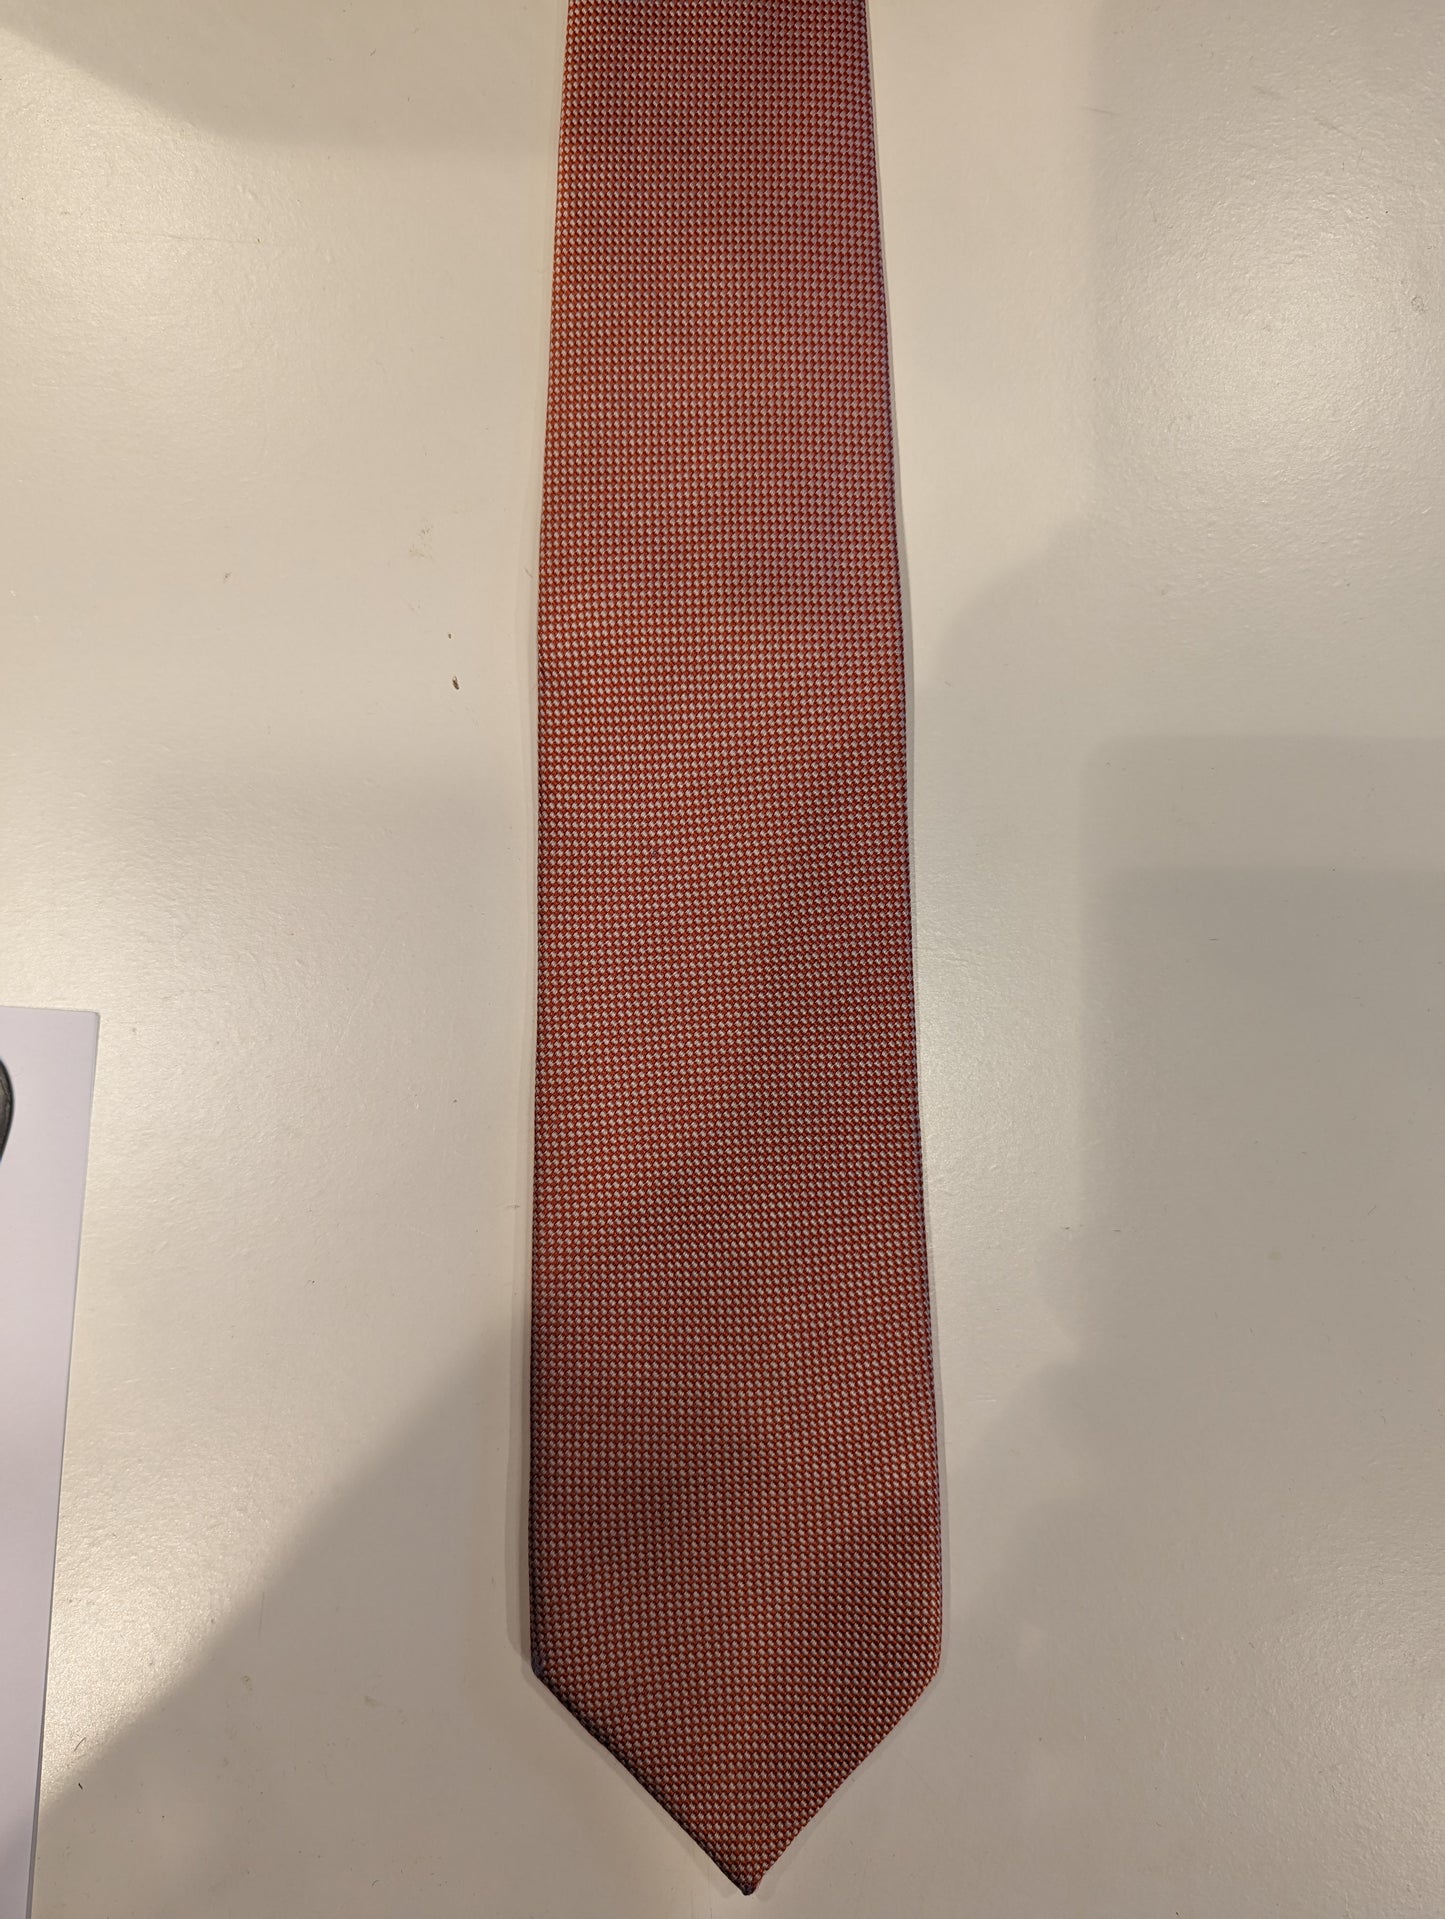 La corbata de seda de Michaelis. Motivo de naranja blanca.